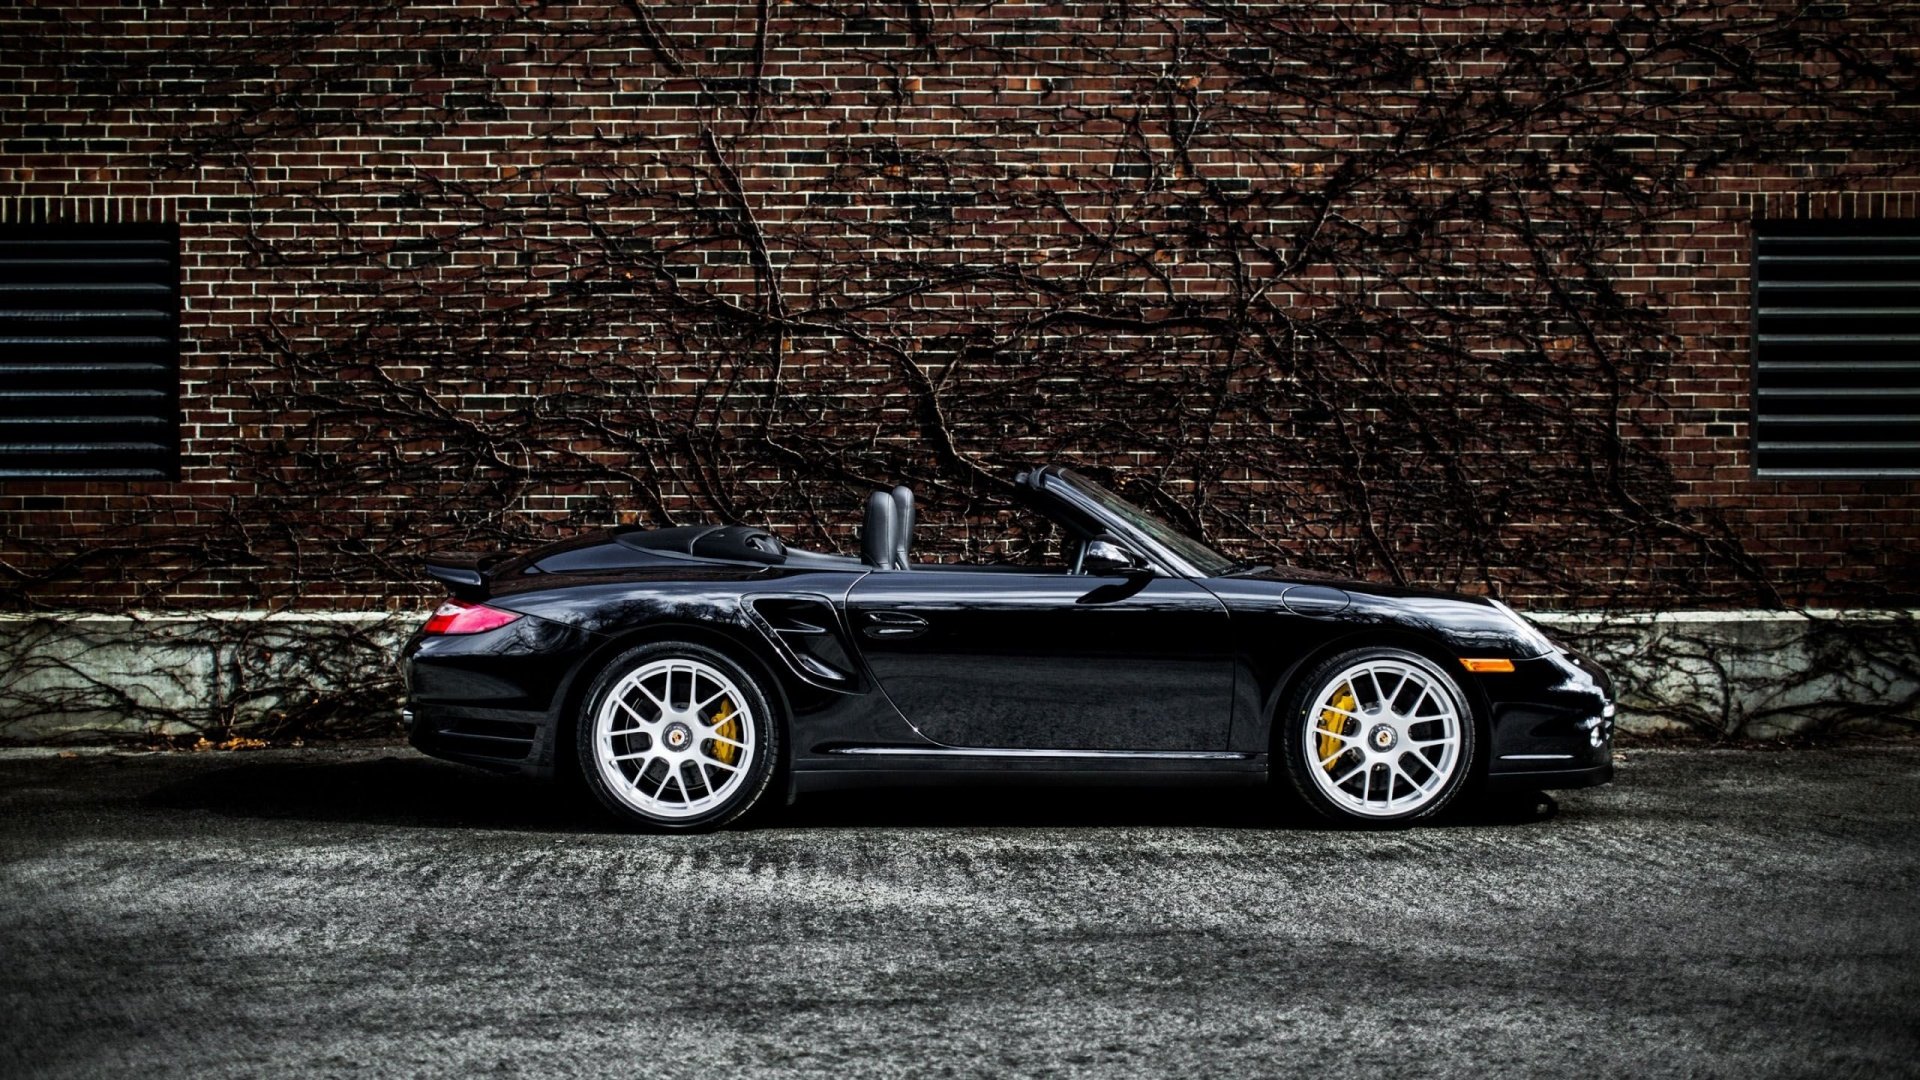 Porsche 911 HD Wallpapers   9989